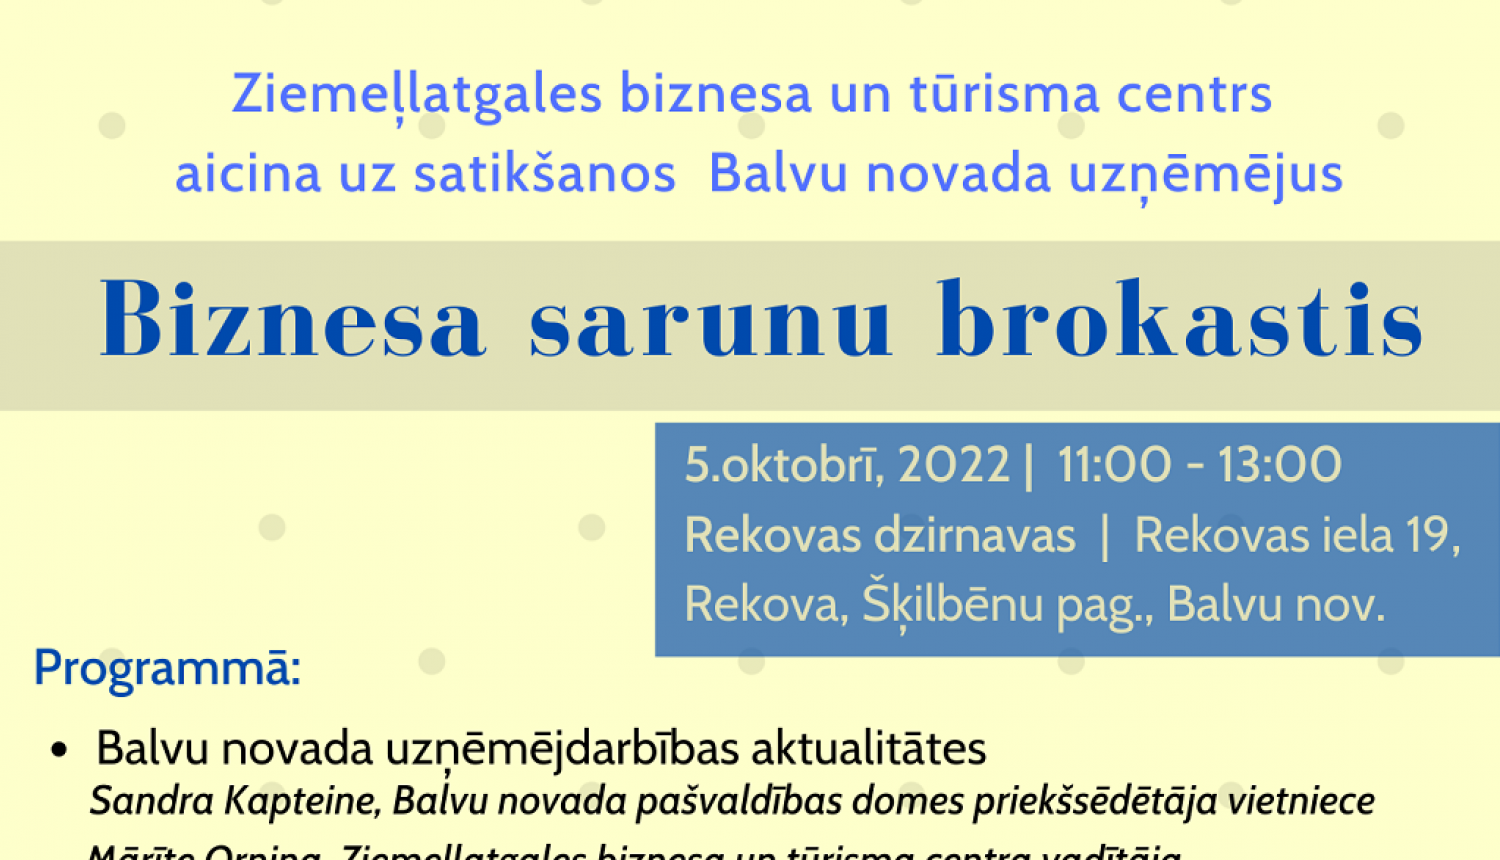 5.oktobrī “Biznesa sarunu brokastis” Balvu novada uzņēmējiem